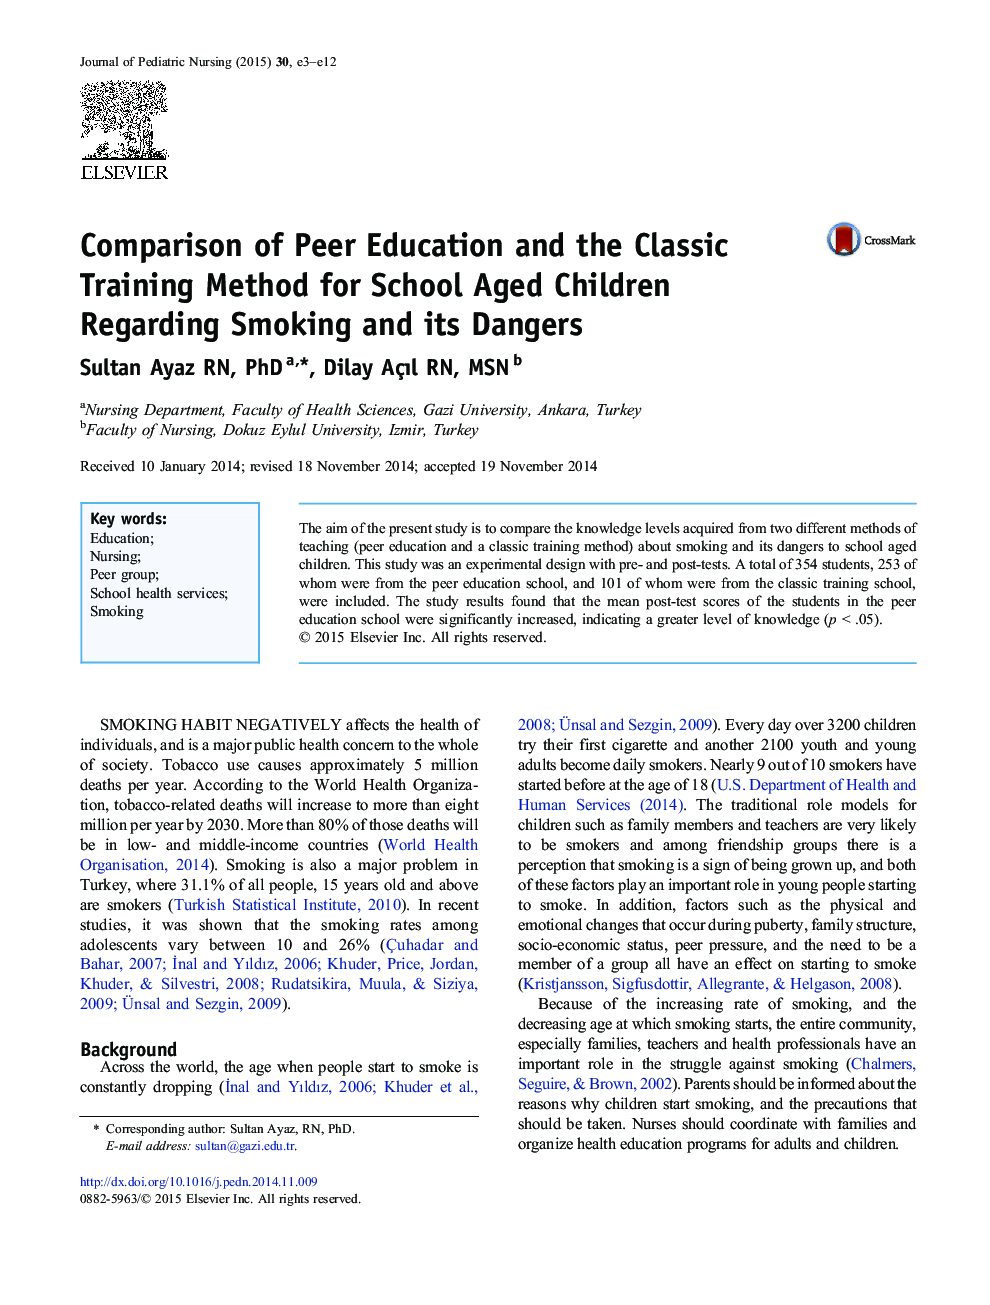 مقایسه آموزش همگانی و روش آموزش کلاسی برای کودکان مدرسه ای در رابطه با سیگار کشیدن و خطرات آن